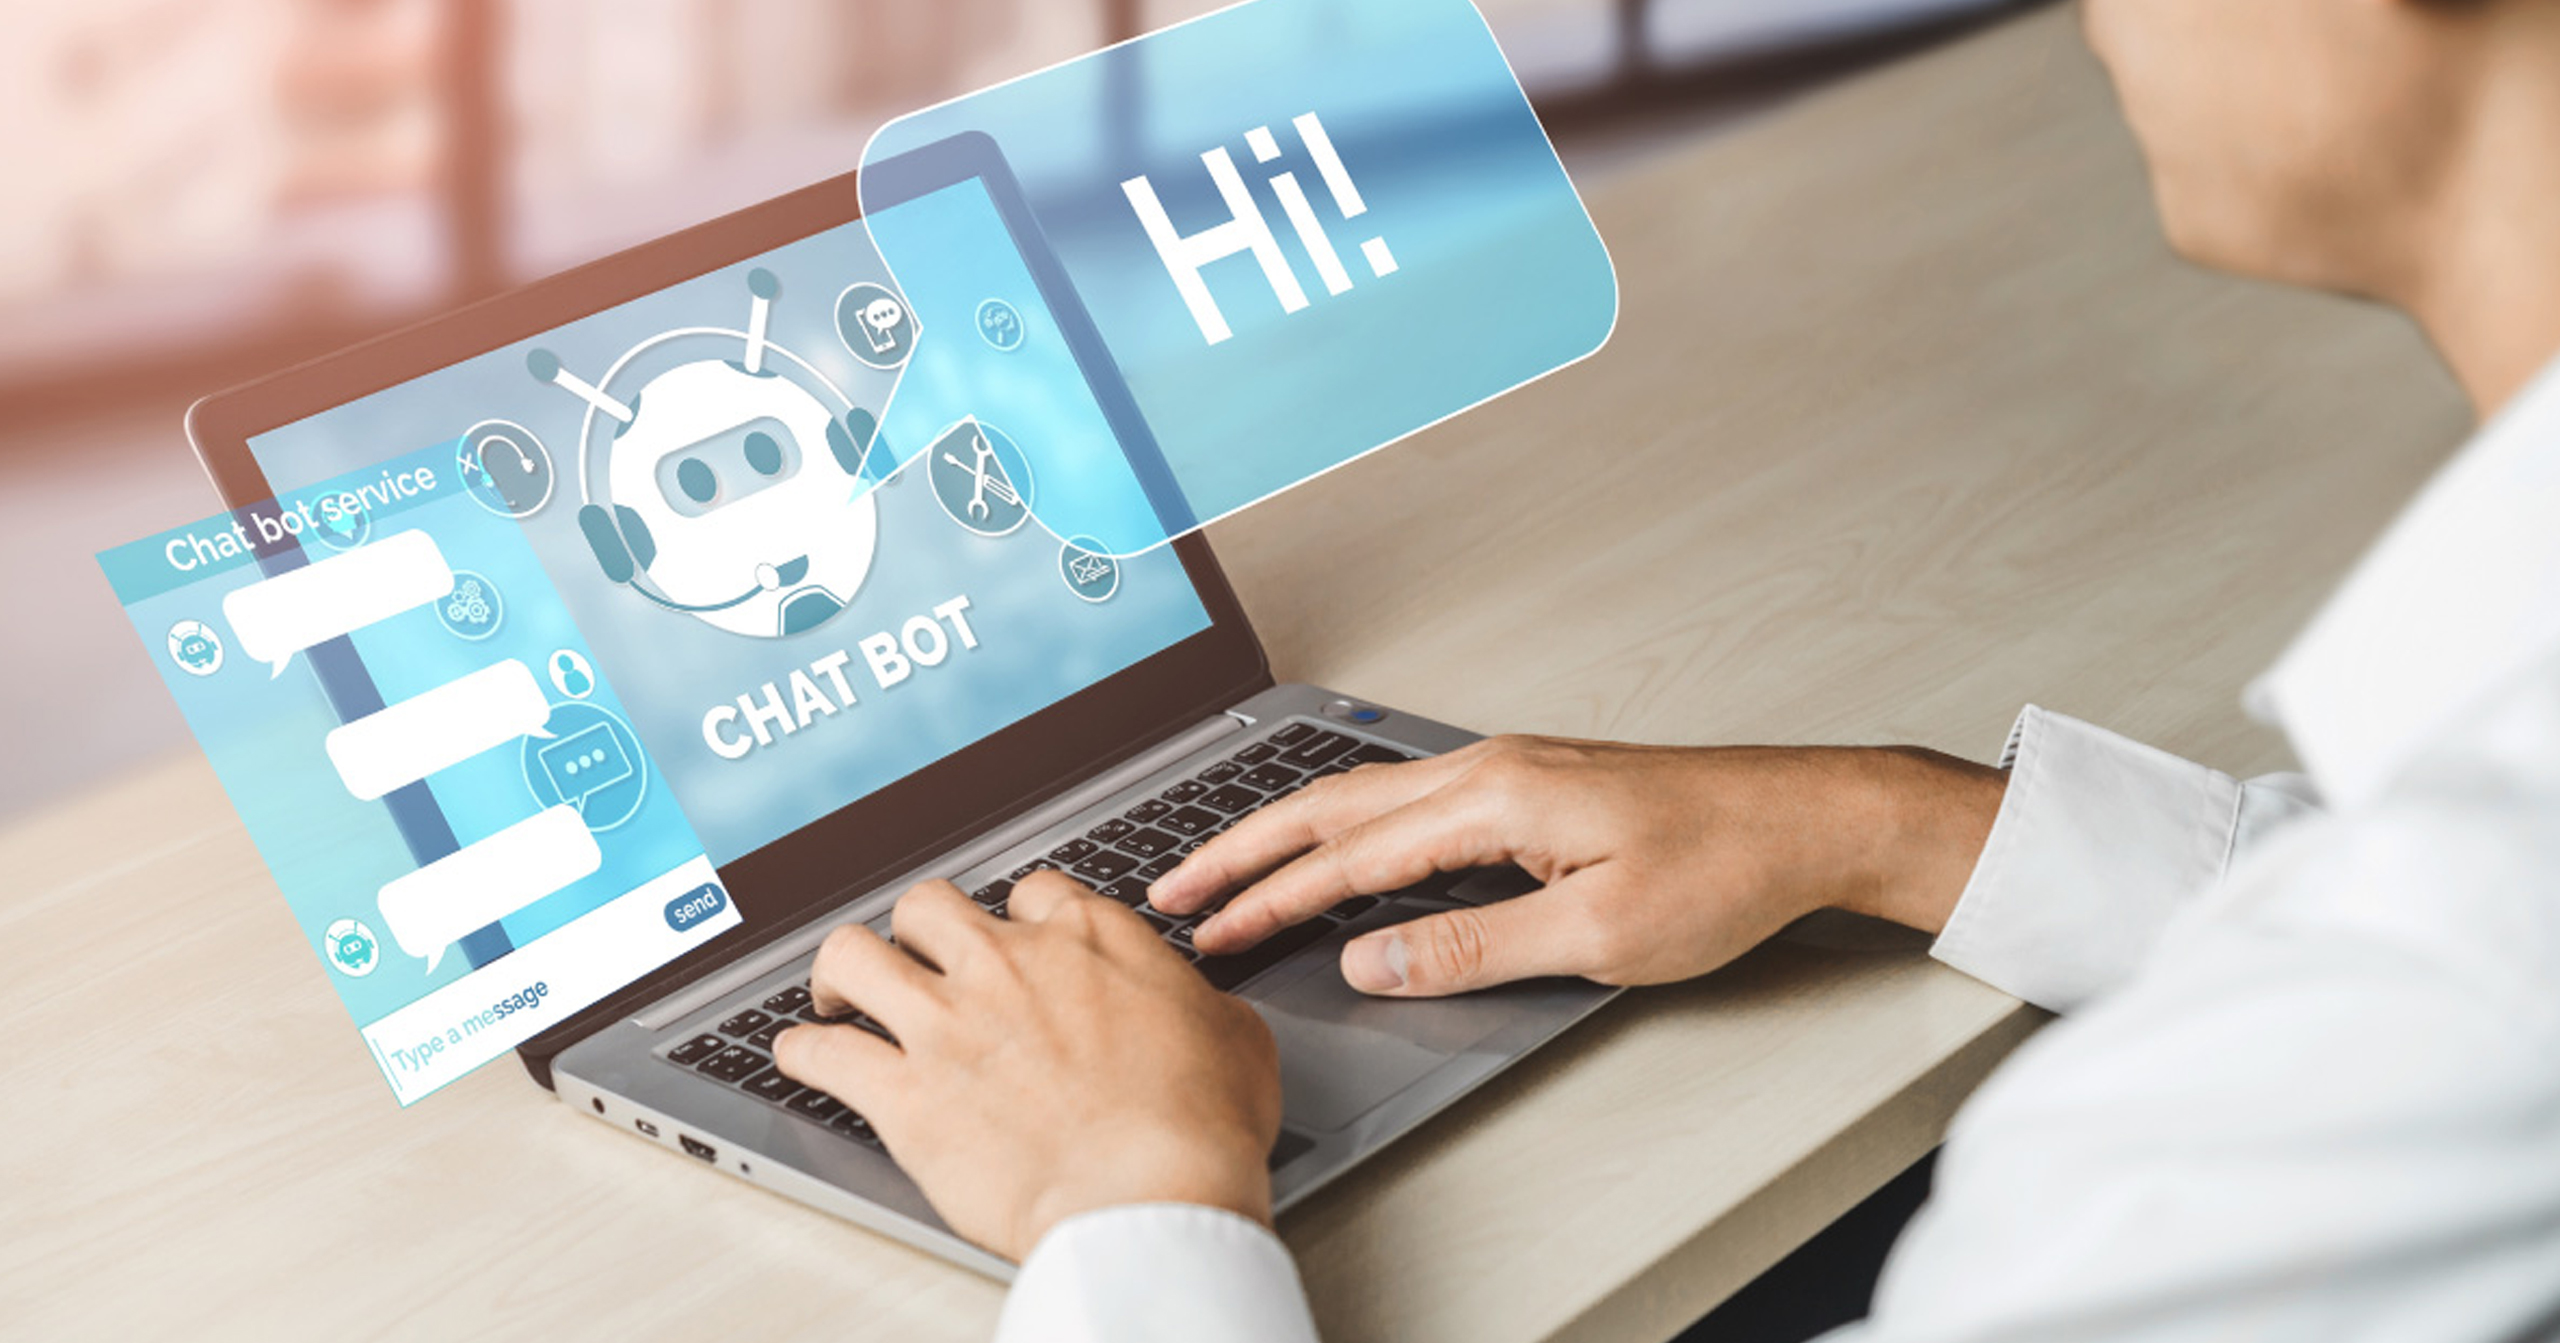 Chatbot đã trở thành một phần không thể thiếu trong nhiều lĩnh vực, từ ngân hàng, bán lẻ, dịch vụ khách hàng đến giáo dục và y tế. Sự phát triển của trí tuệ nhân tạo và học máy đã giúp chatbot ngày càng thông minh và linh hoạt trong việc đáp ứng nhu cầu của người dùng.